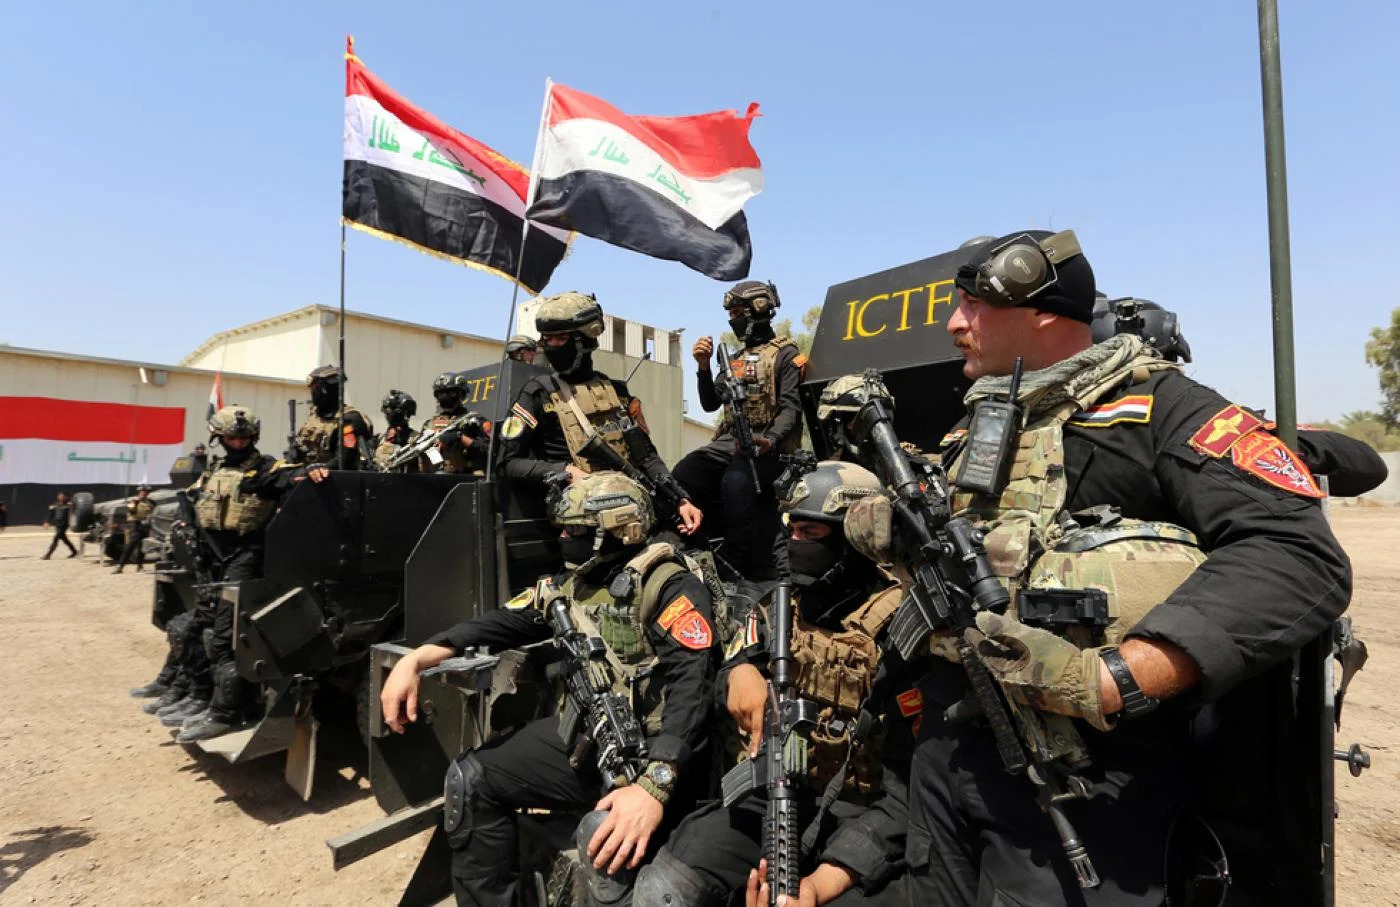 Iraqi soldiers